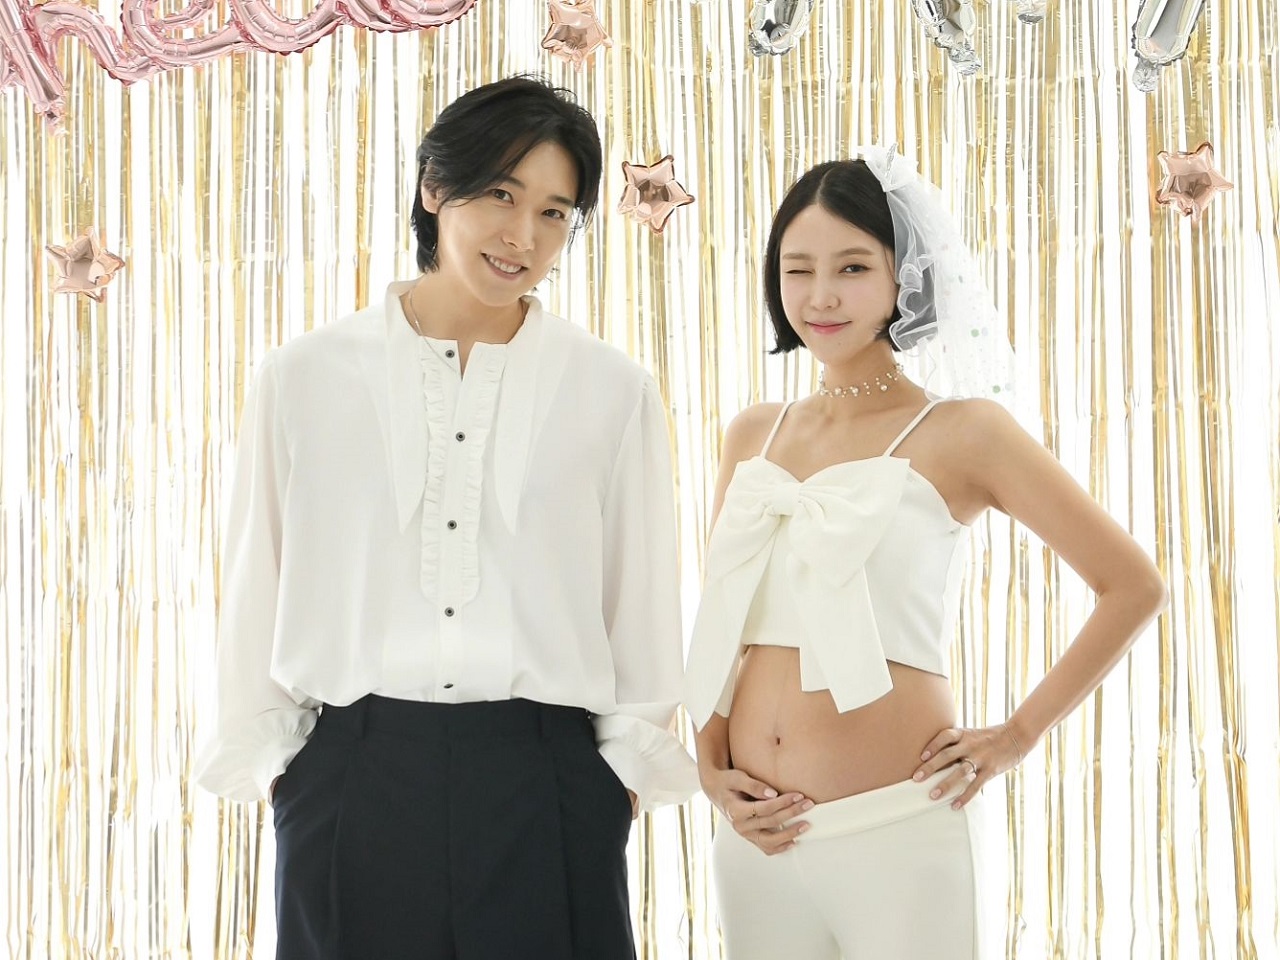 グループ活動休止となった波紋の結婚から10年…SUPER JUNIOR・ソンミン、女優妻の妊娠を発表「父になる」